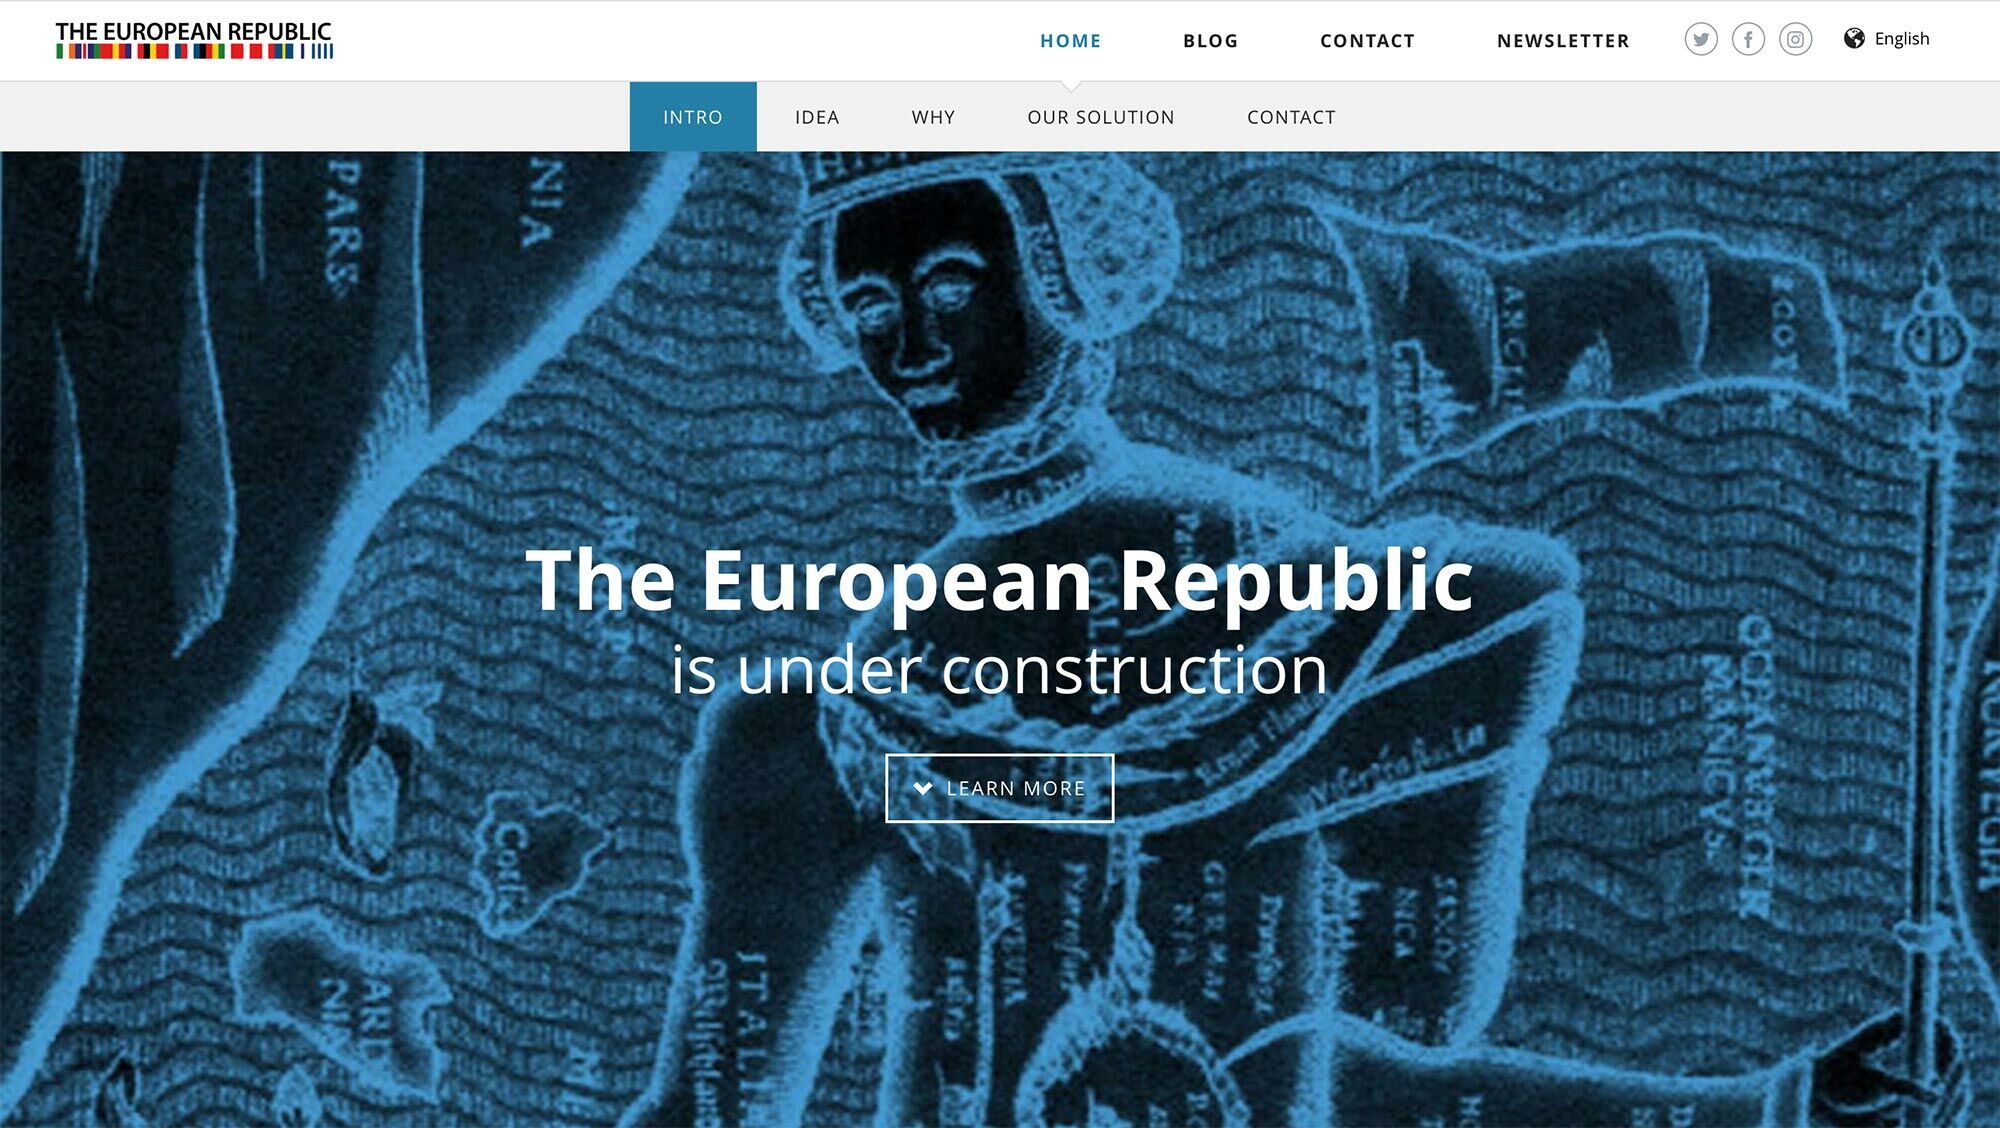 <p><strong>Europäische Republik</strong><br />Design, Programmierung, Umsetzung: © Jan Kout<br /><a href="http://www.european-republic.eu" target="_blank">www.european-republic.eu</a></p>